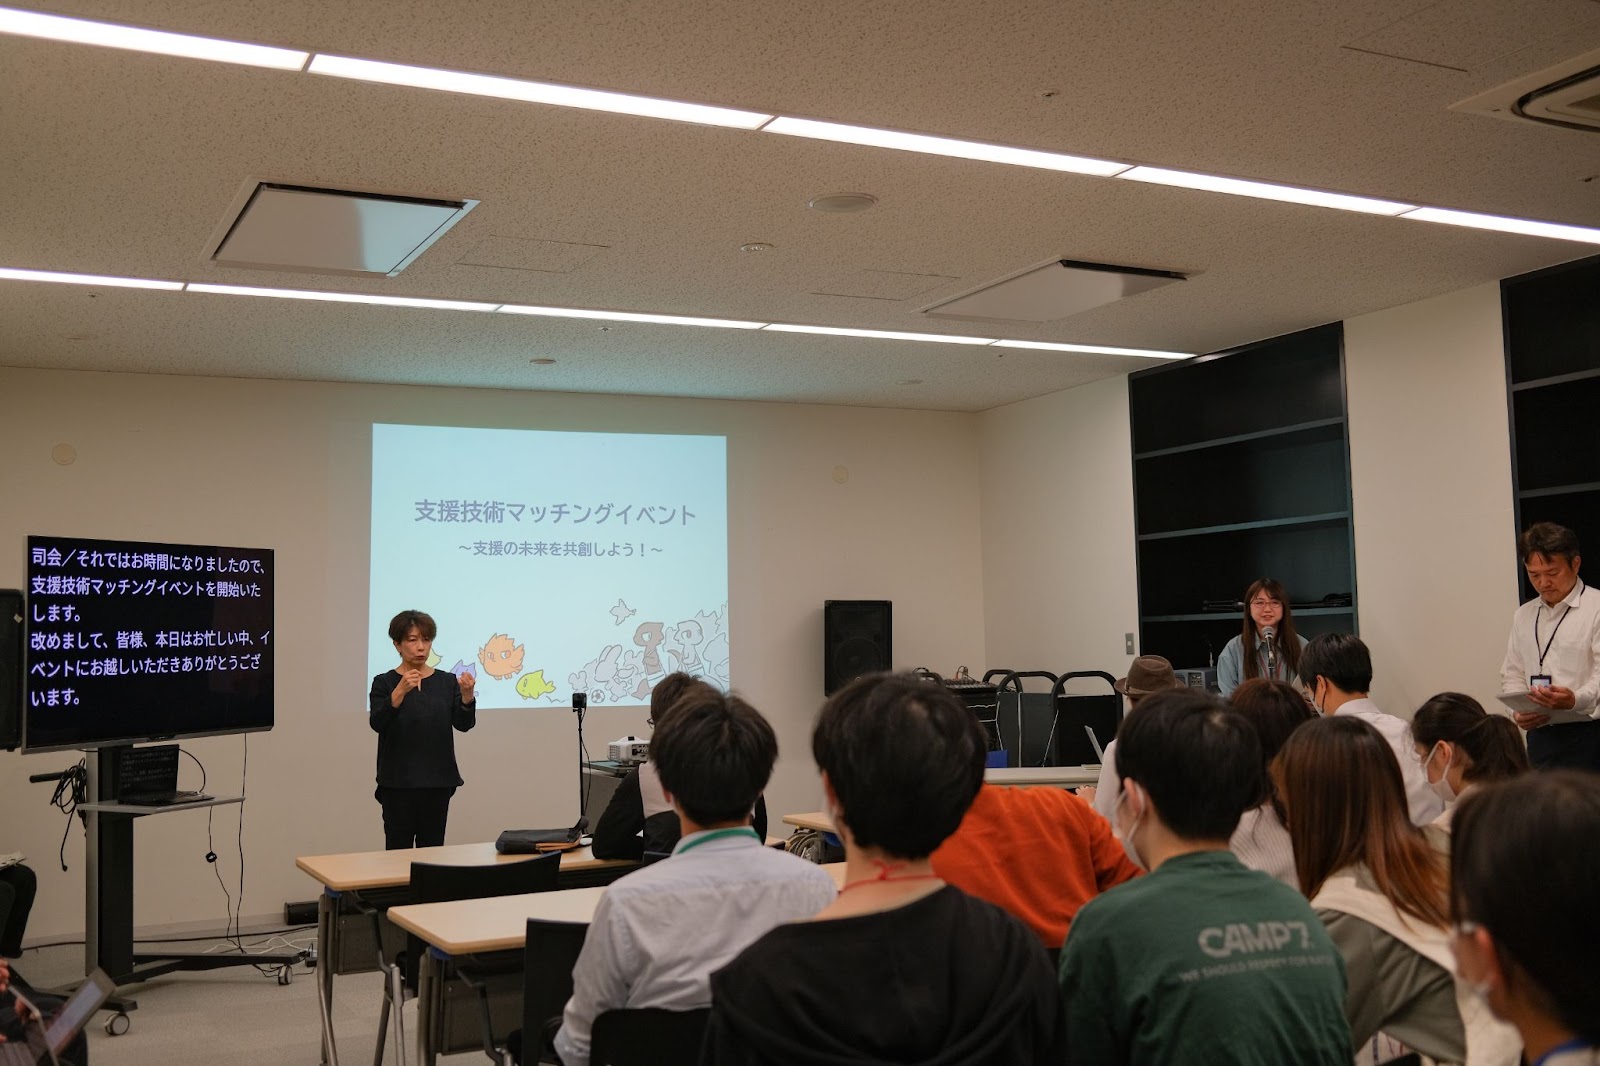 イベント冒頭、筑波大学 担当者がイベント趣旨を説明している。横には、手話通訳士と文字通訳のモニターが並んでいる。